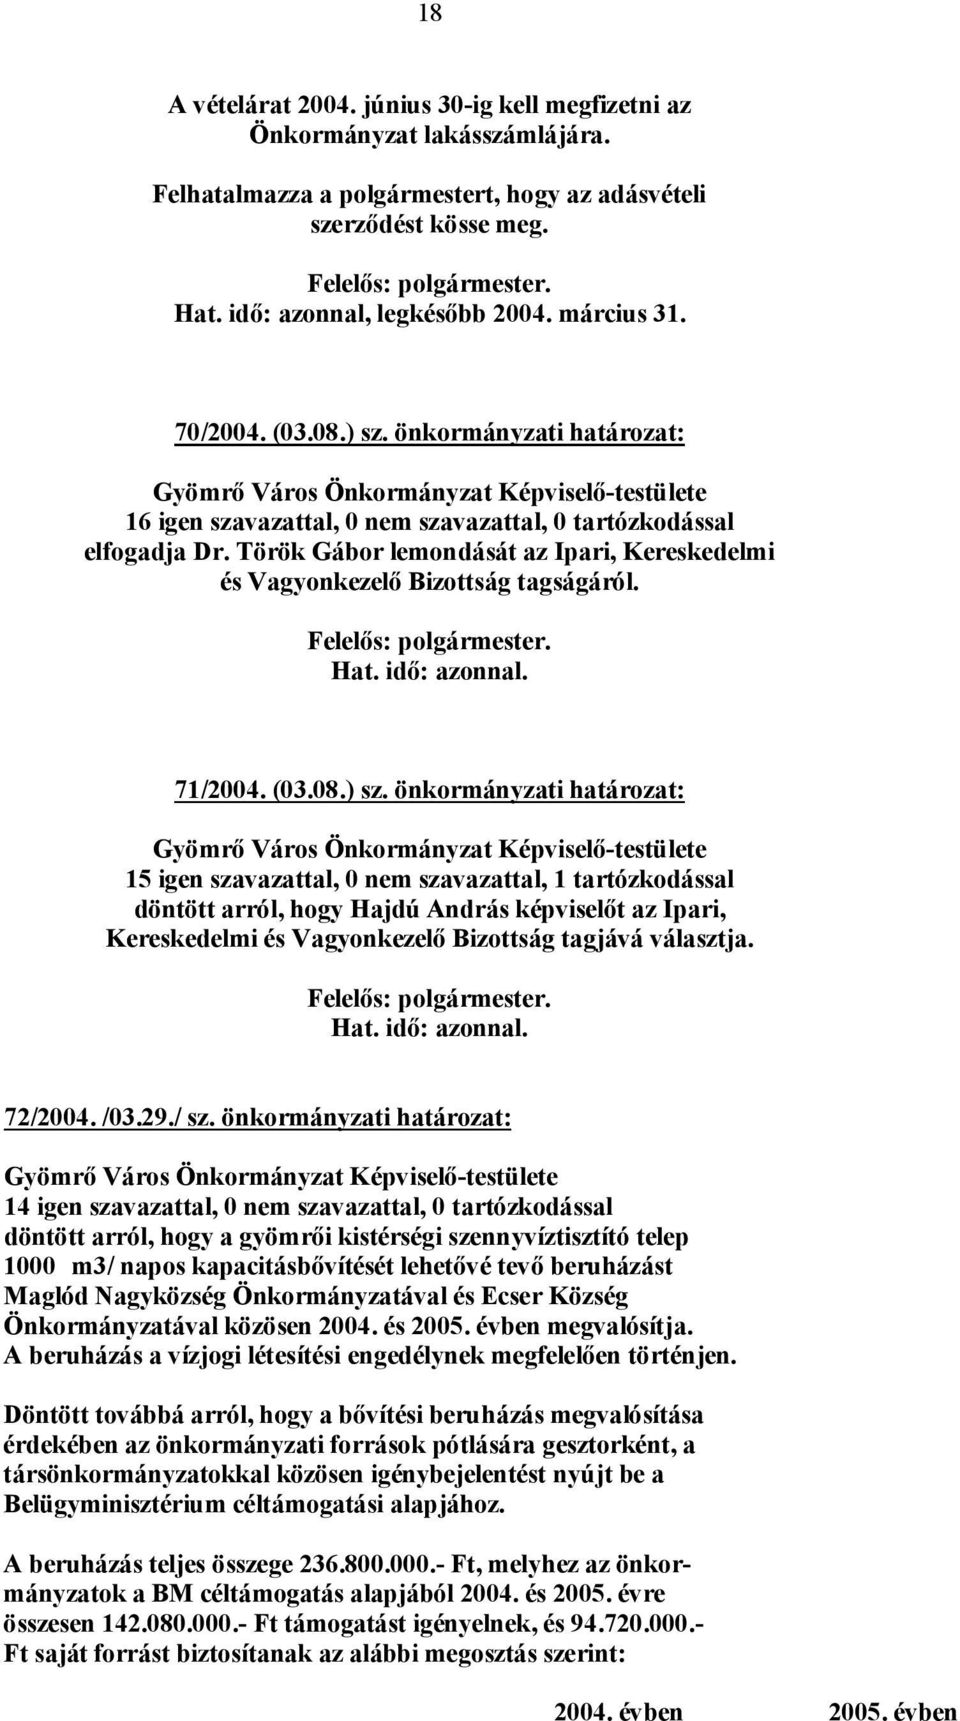 önkormányzati határozat: elfogadja Dr. Török Gábor lemondását az Ipari, Kereskedelmi és Vagyonkezelő Bizottság tagságáról. 71/2004. (03.08.) sz.